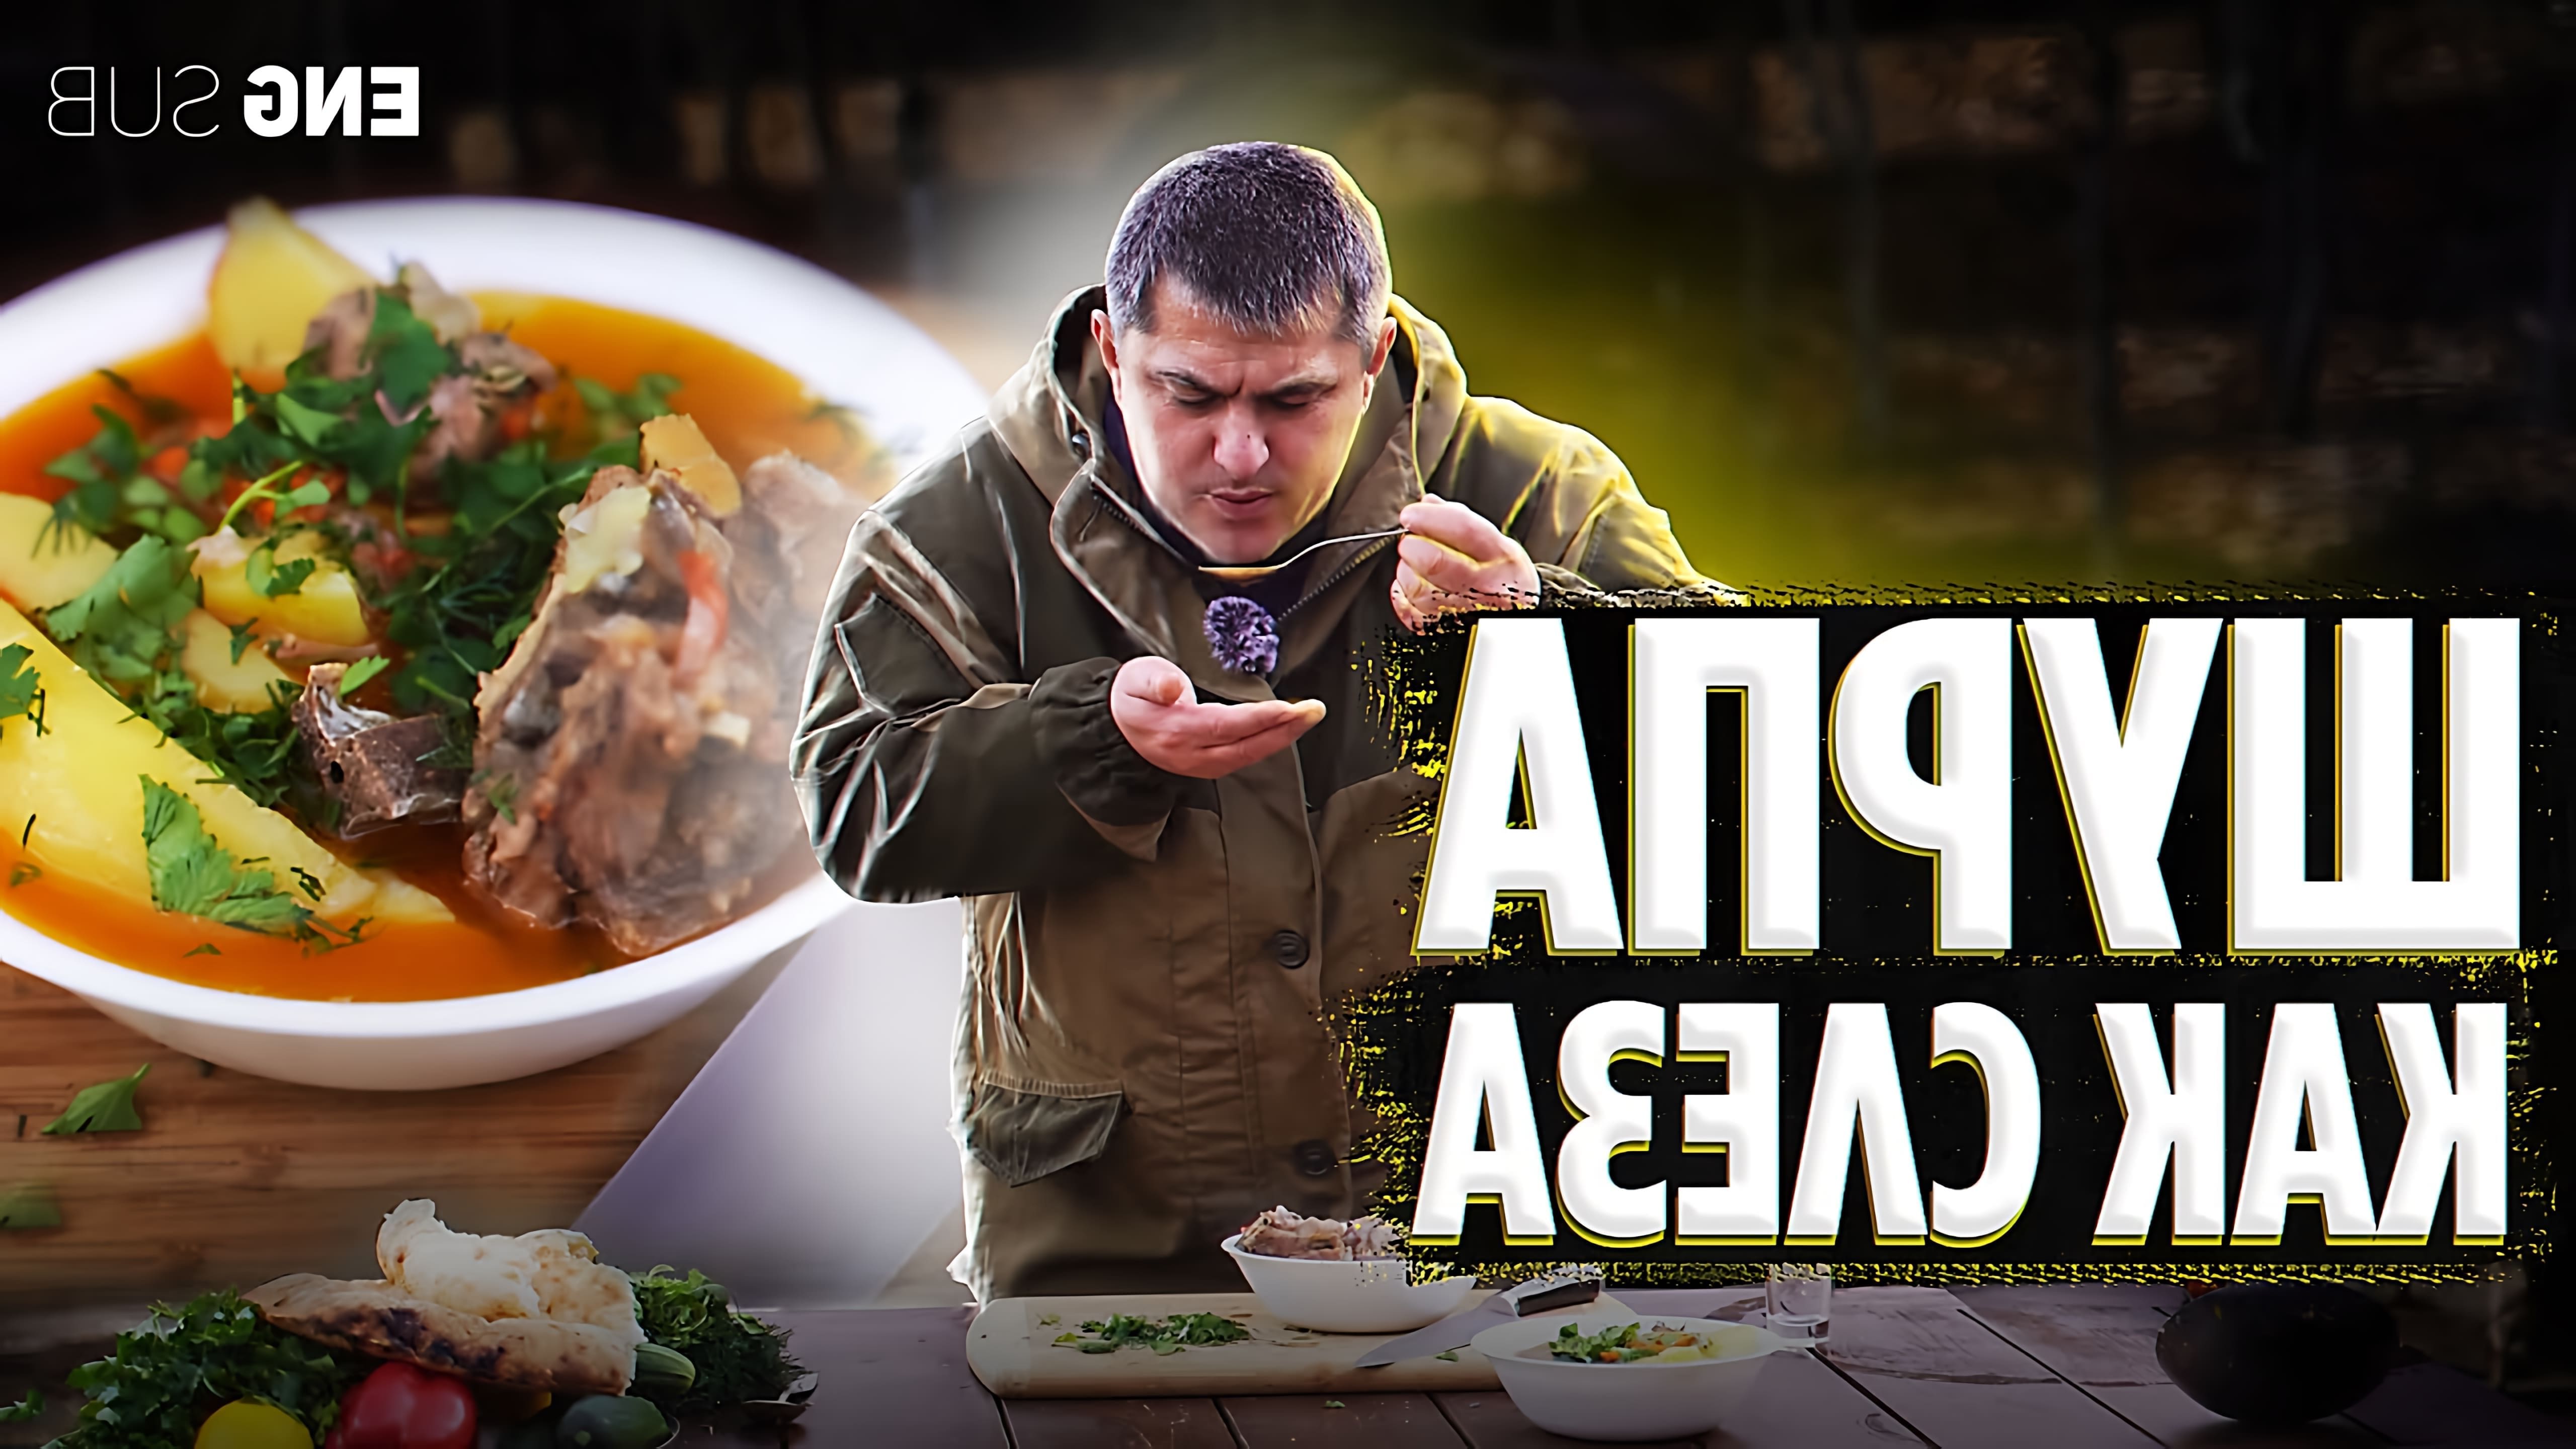 В этом видео демонстрируется процесс приготовления шурпы, традиционного блюда кавказской кухни